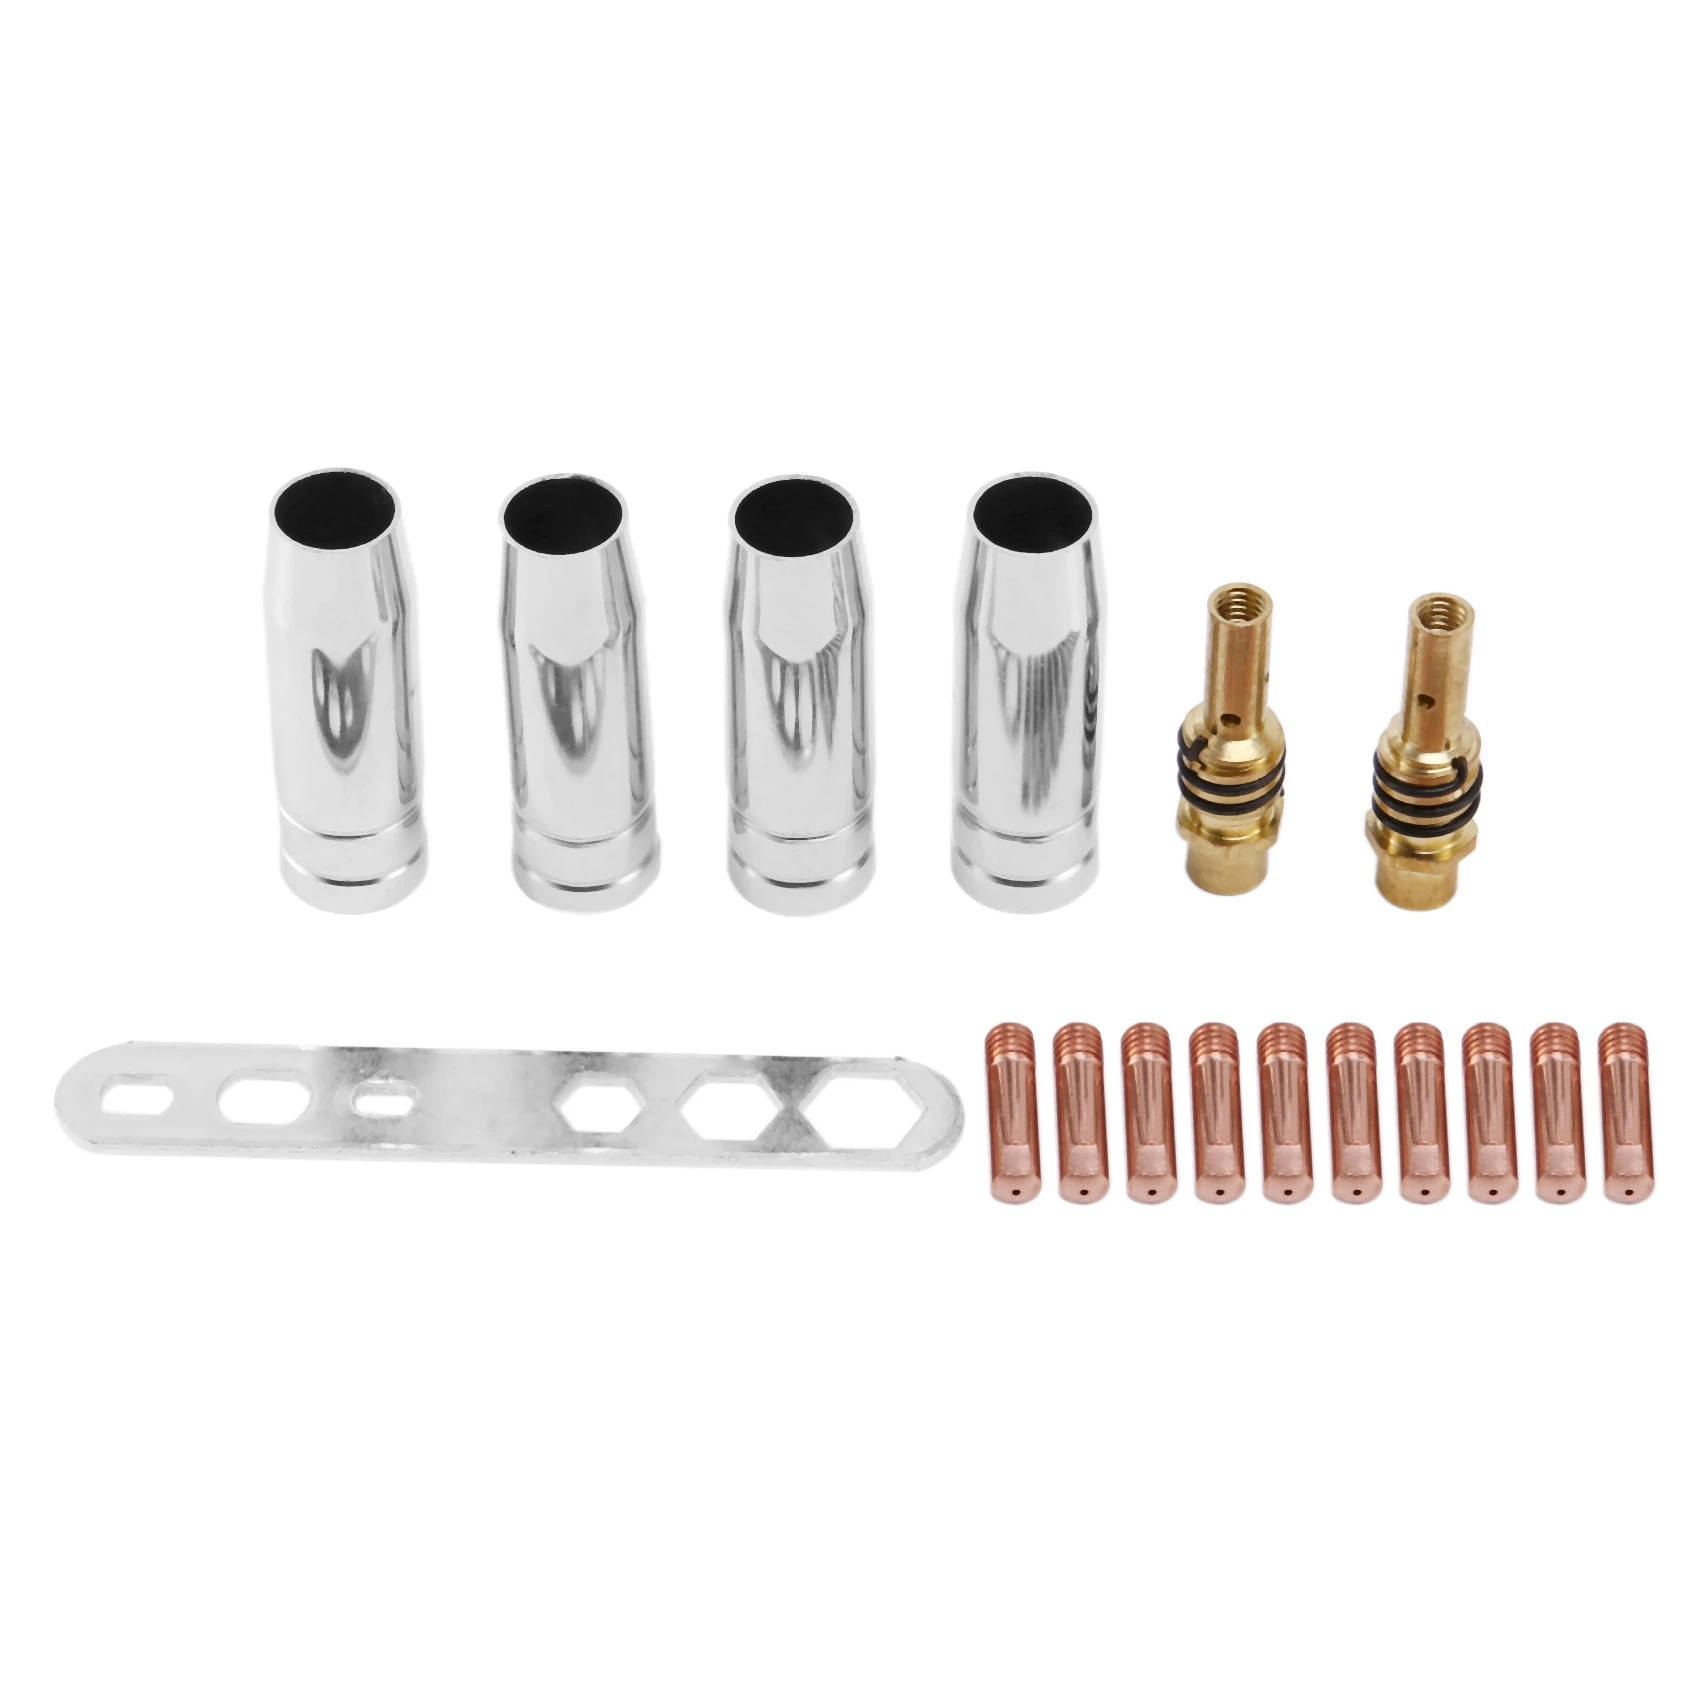 

Комплект наконечников для сварки 15Ak Mig/Mag, 17 шт./комплект, контактные наконечники 0,8x25 мм M6, комплект держателей для газового соединителя